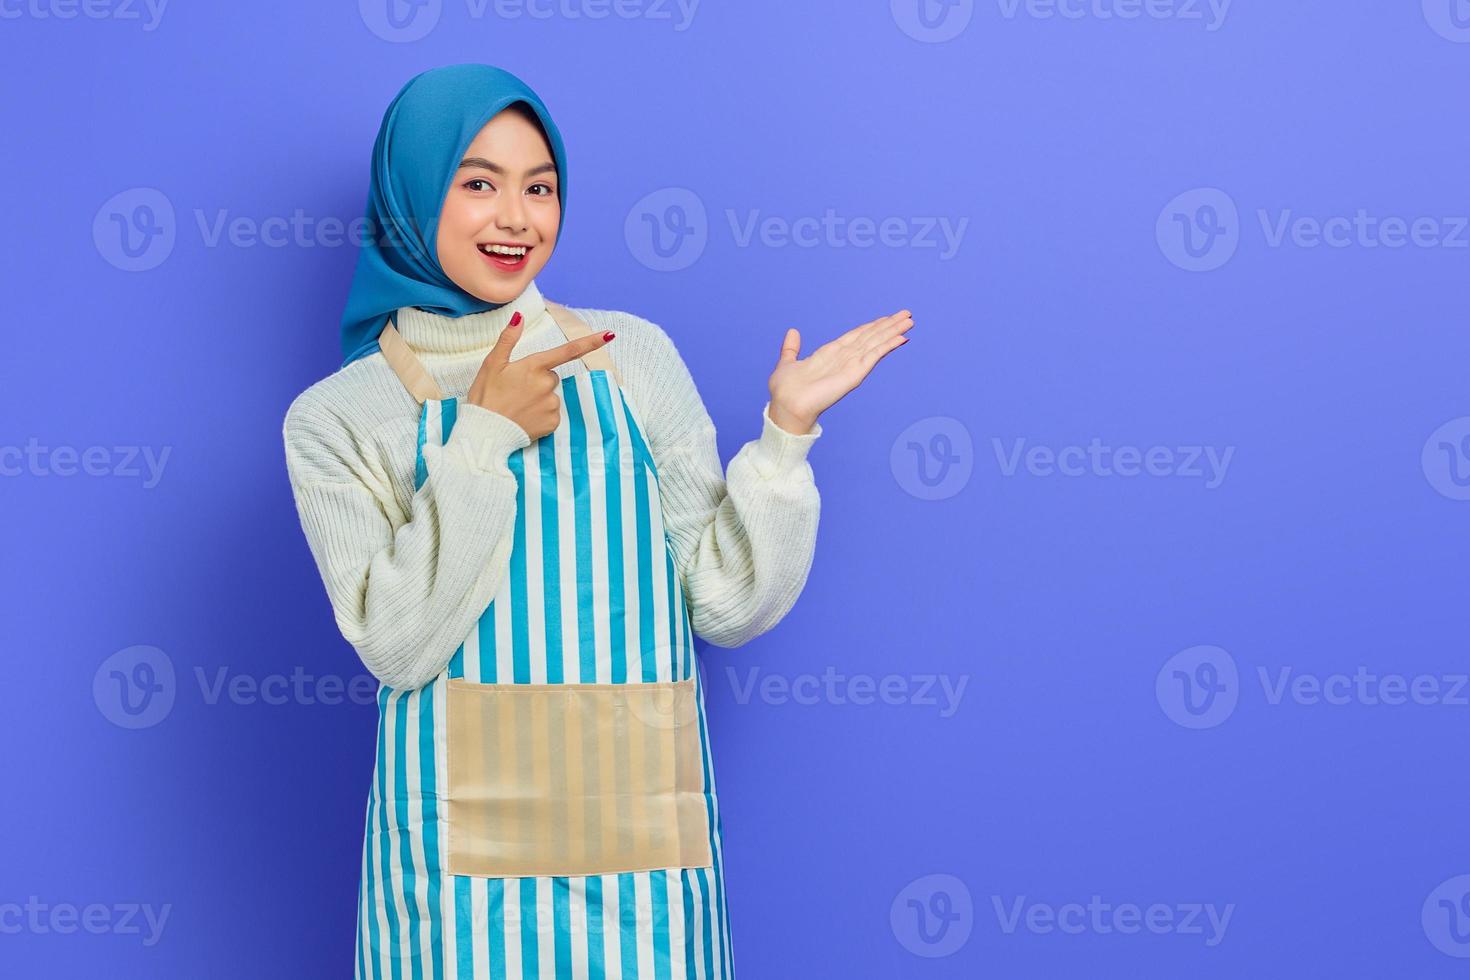 Ritratto di giovane donna musulmana asiatica sorridente in hijab e grembiule a righe, che mostra il prodotto con il dito e le mani isolate su sfondo viola. concetto di stile di vita musulmano casalinga di persone foto